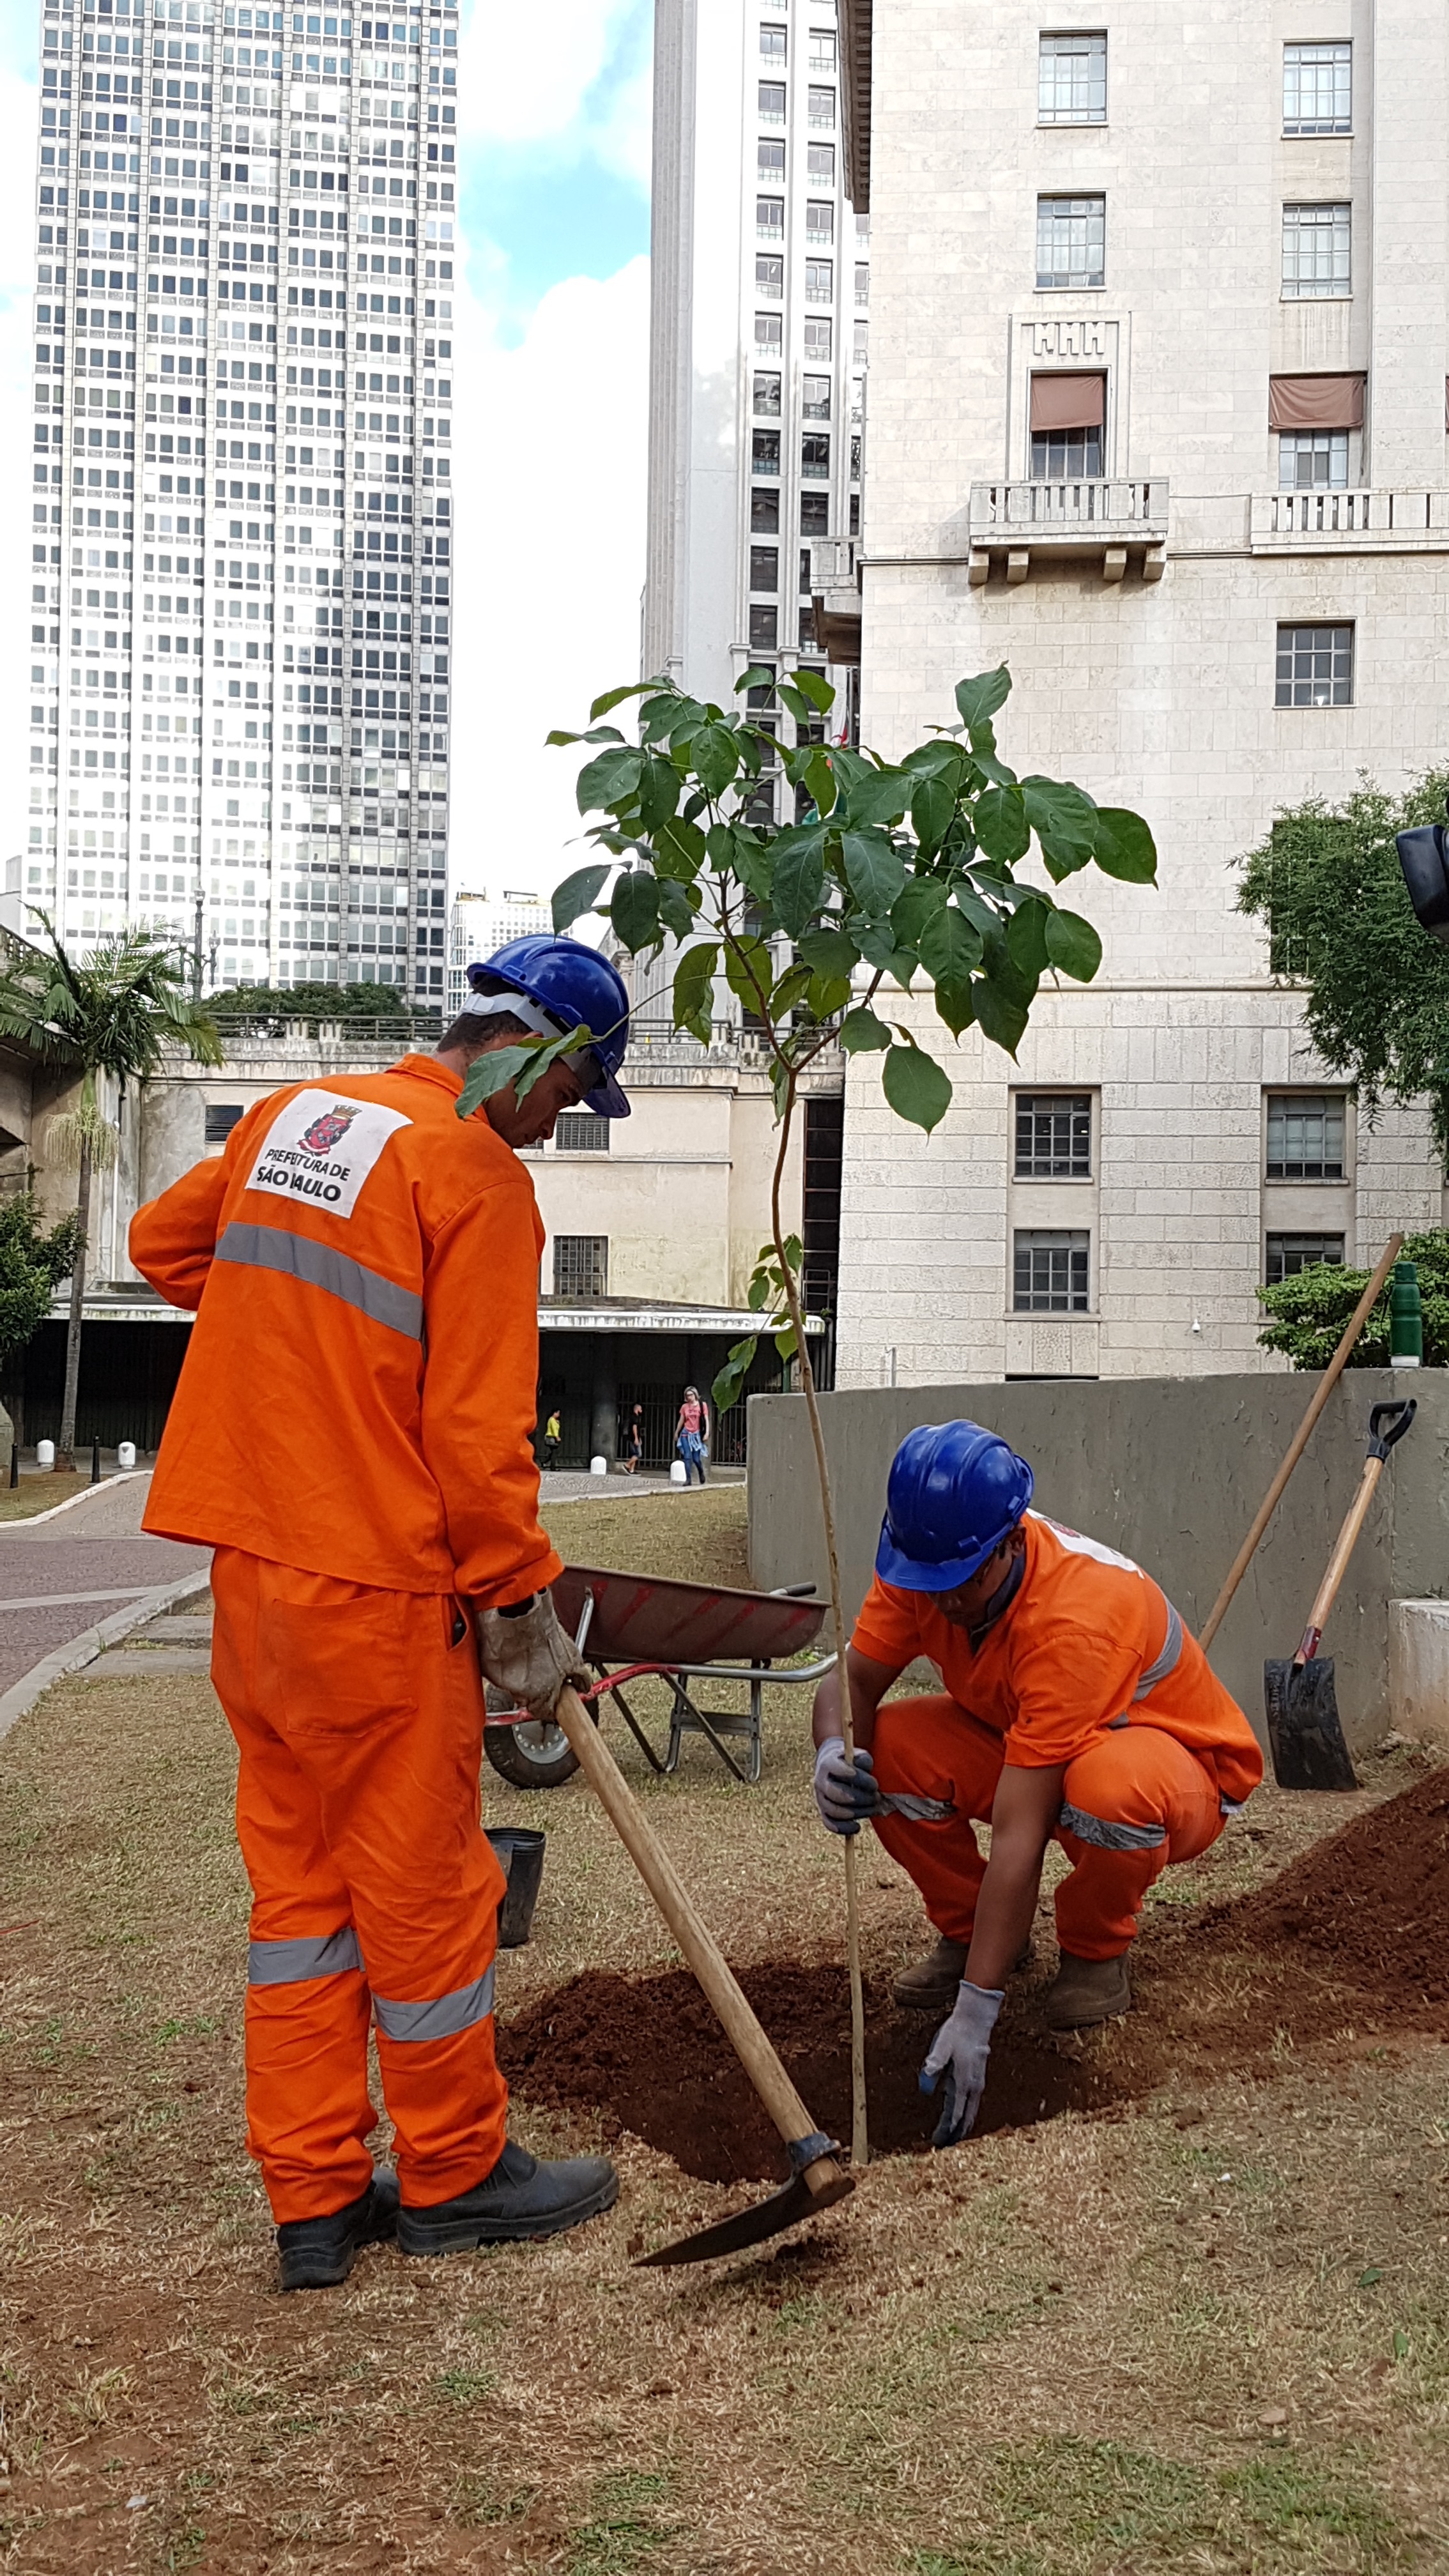 Imagem é uma fotografia colorida que mostra dois funcionários da Prefeitura realizando o plantio de uma muda no centro da cidade, em frente ao prédio da prefeitura. Os dois vestem uniforme laranja e capacete azul 